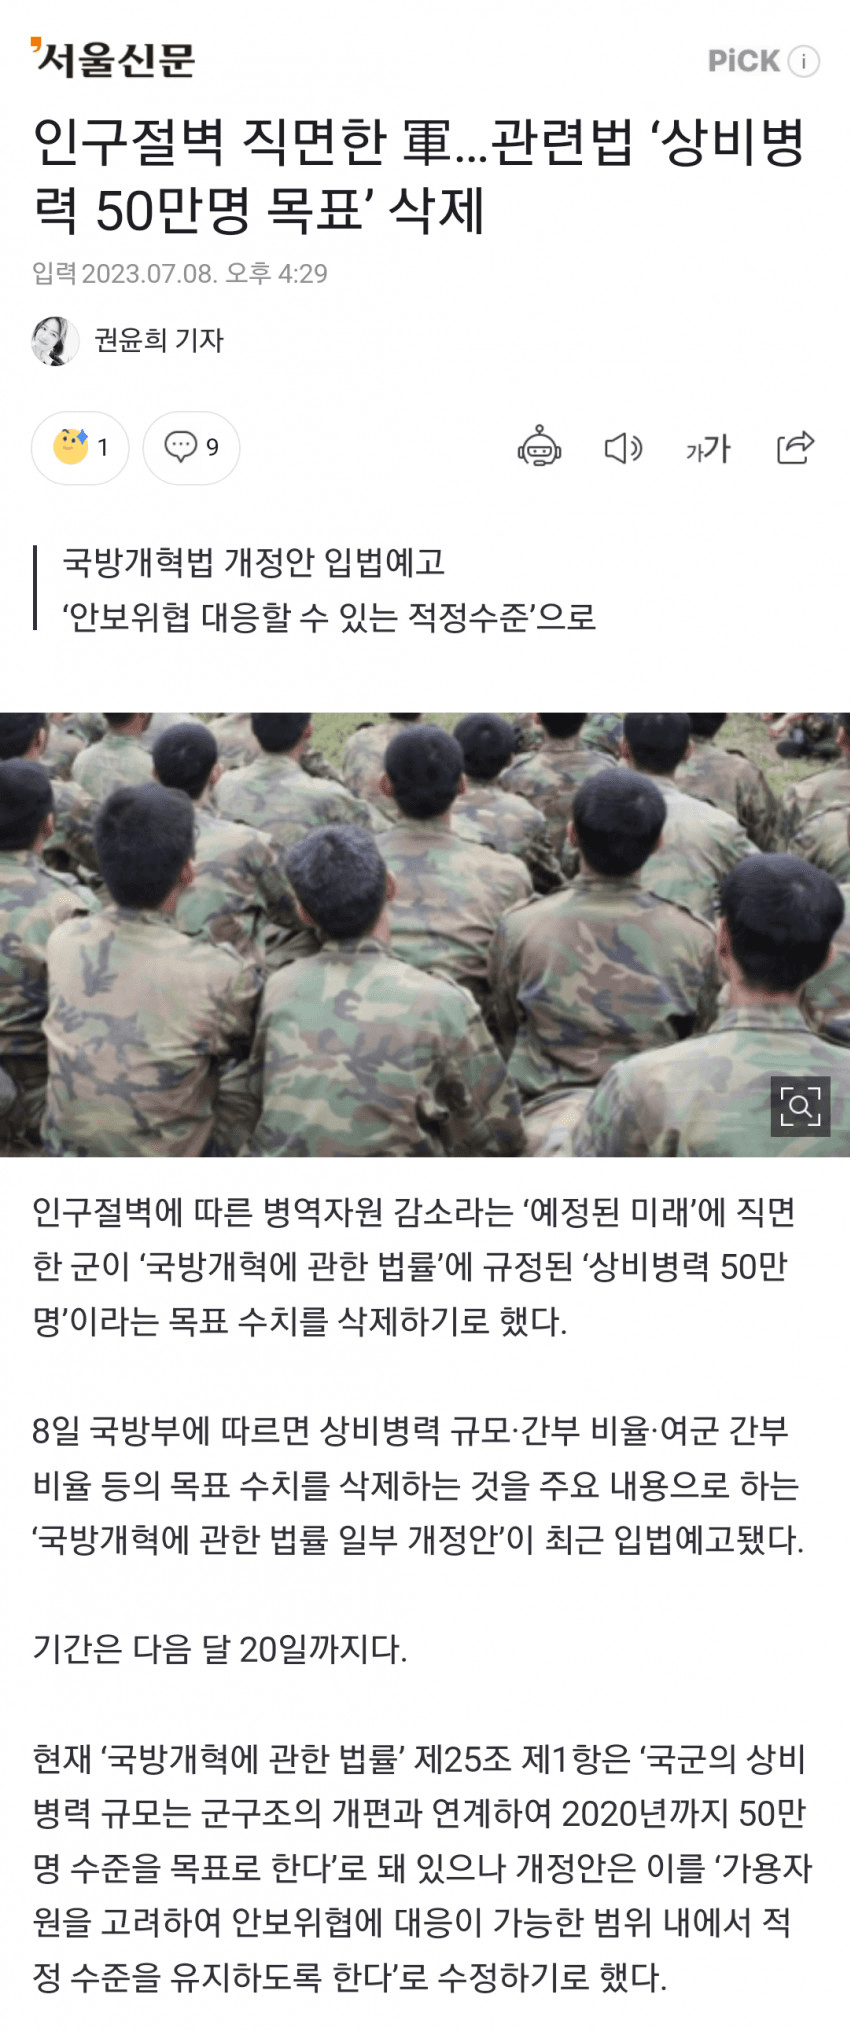 image.png [긴급] 군대 상비병력 50만 목표 삭제